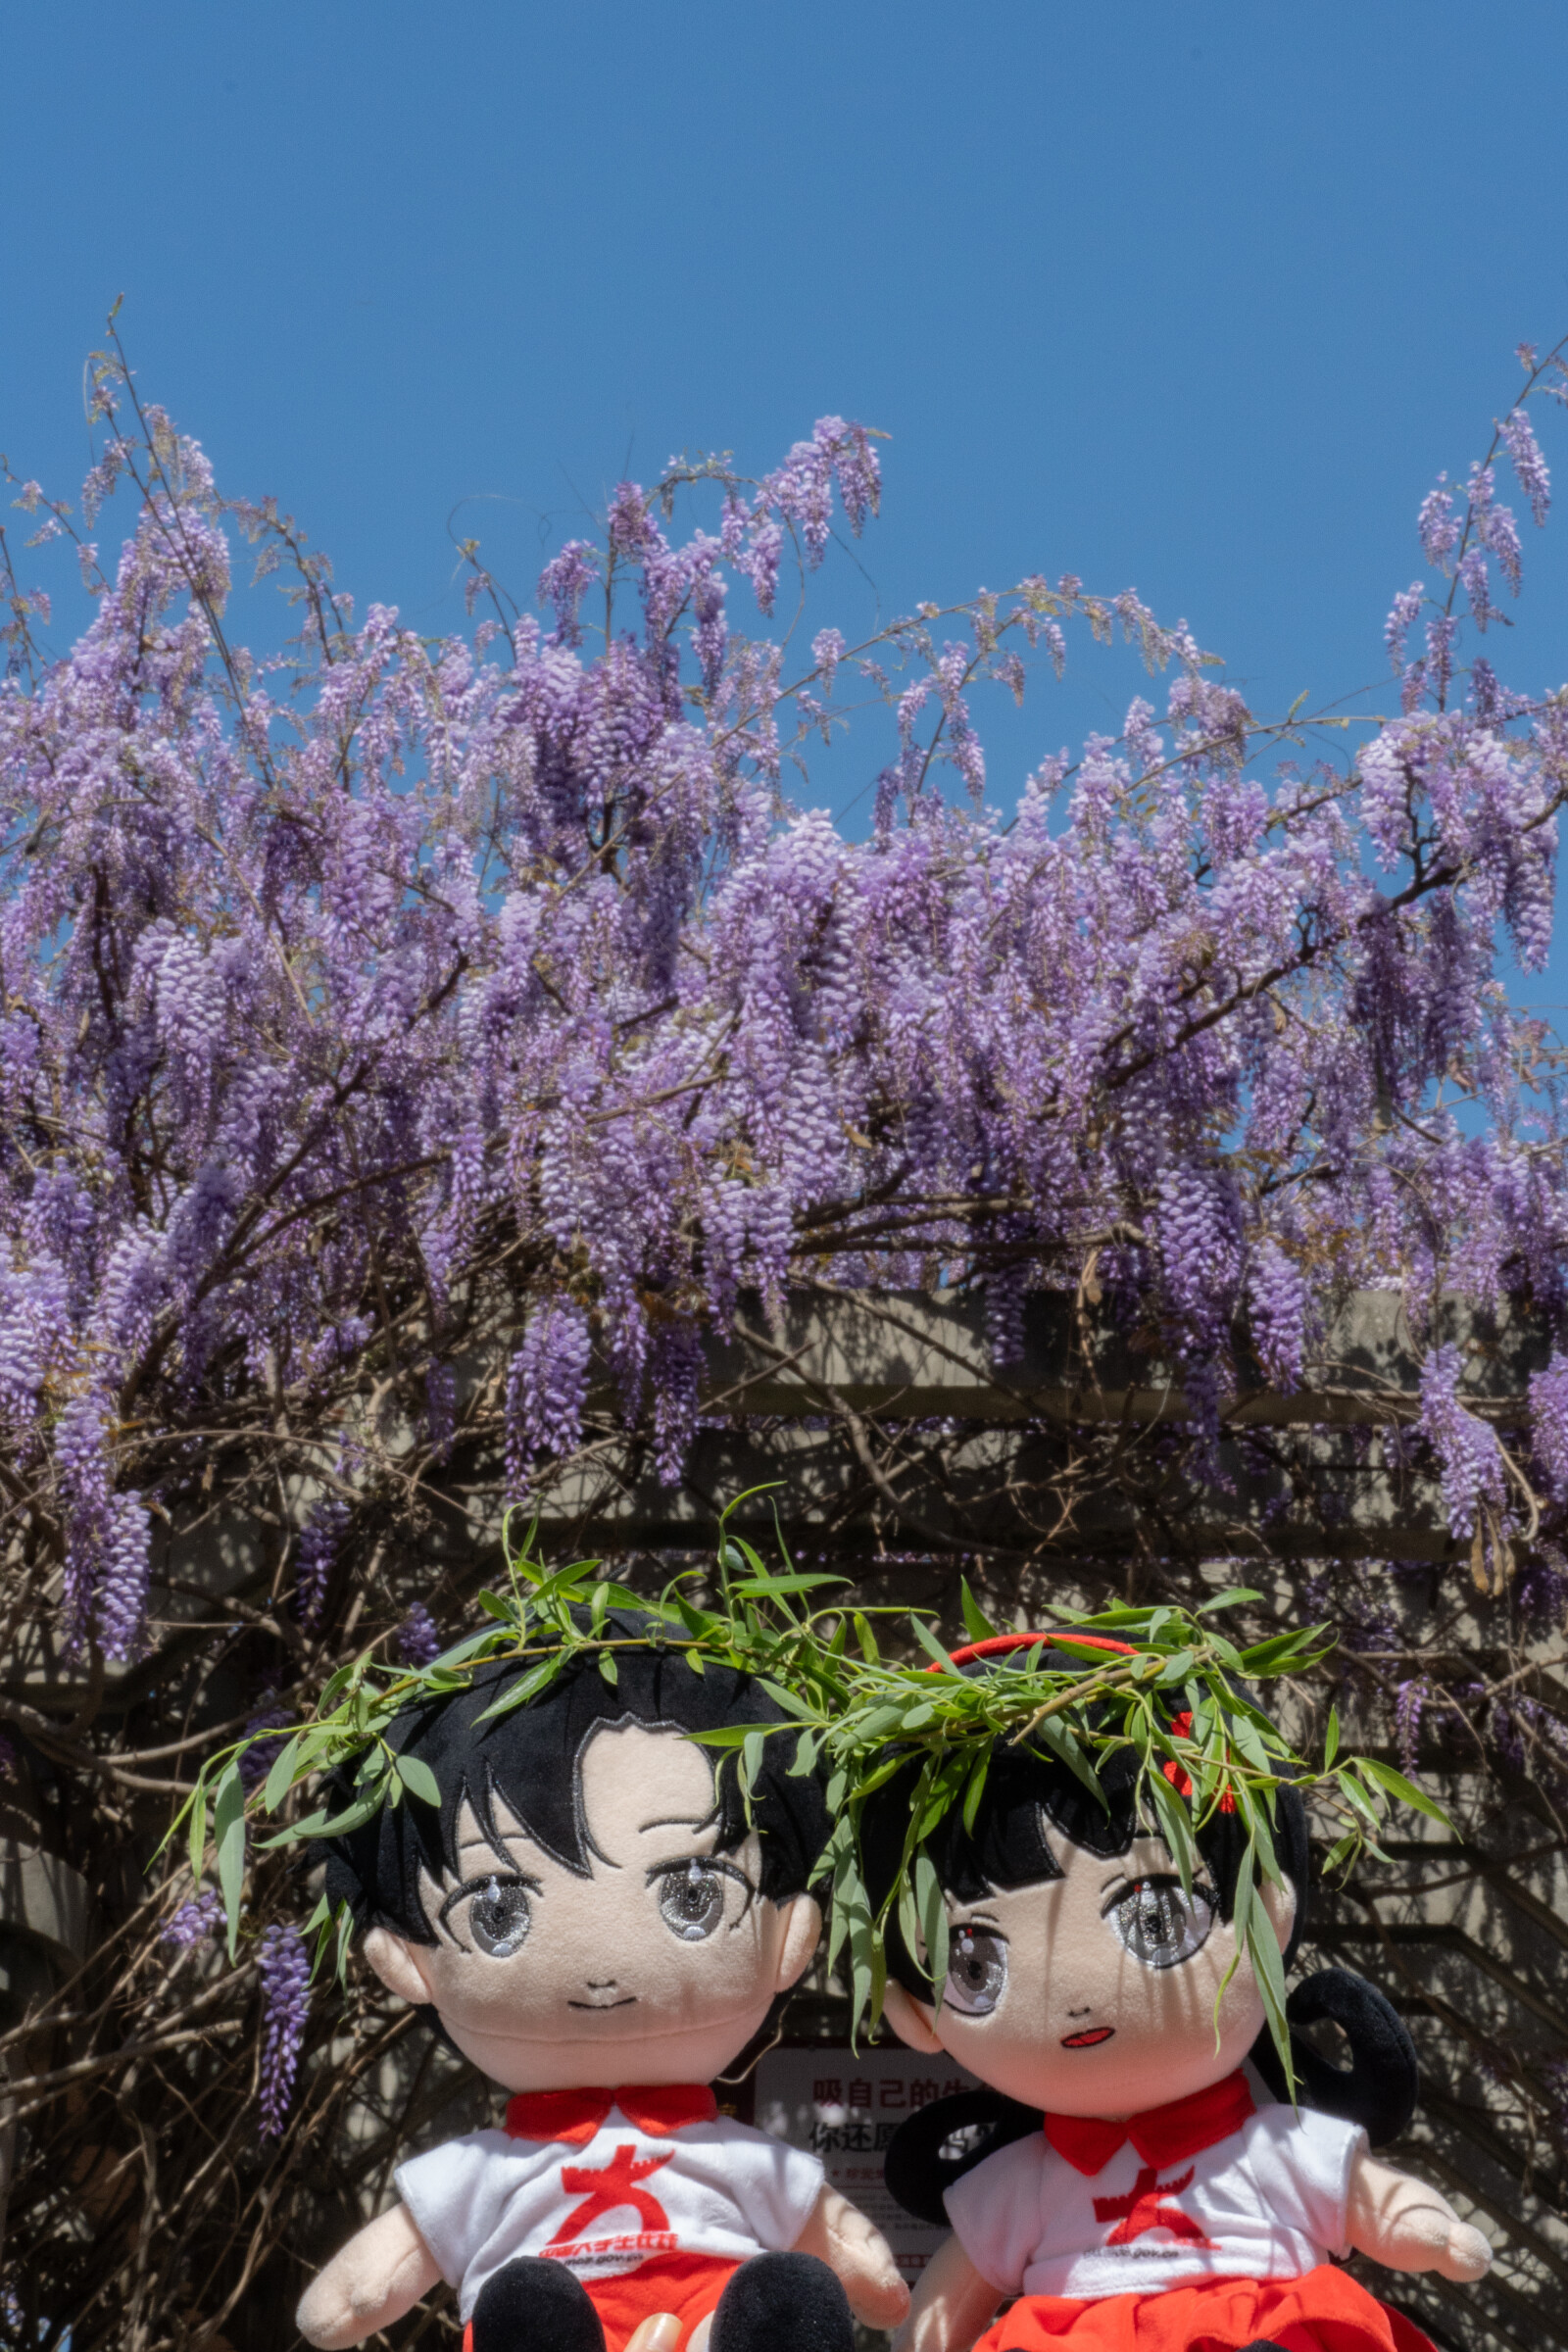 紫藤花开，清风拂过，一串一串的紫藤花随风将春天的芬芳送向远方。（邱梓铭 摄）